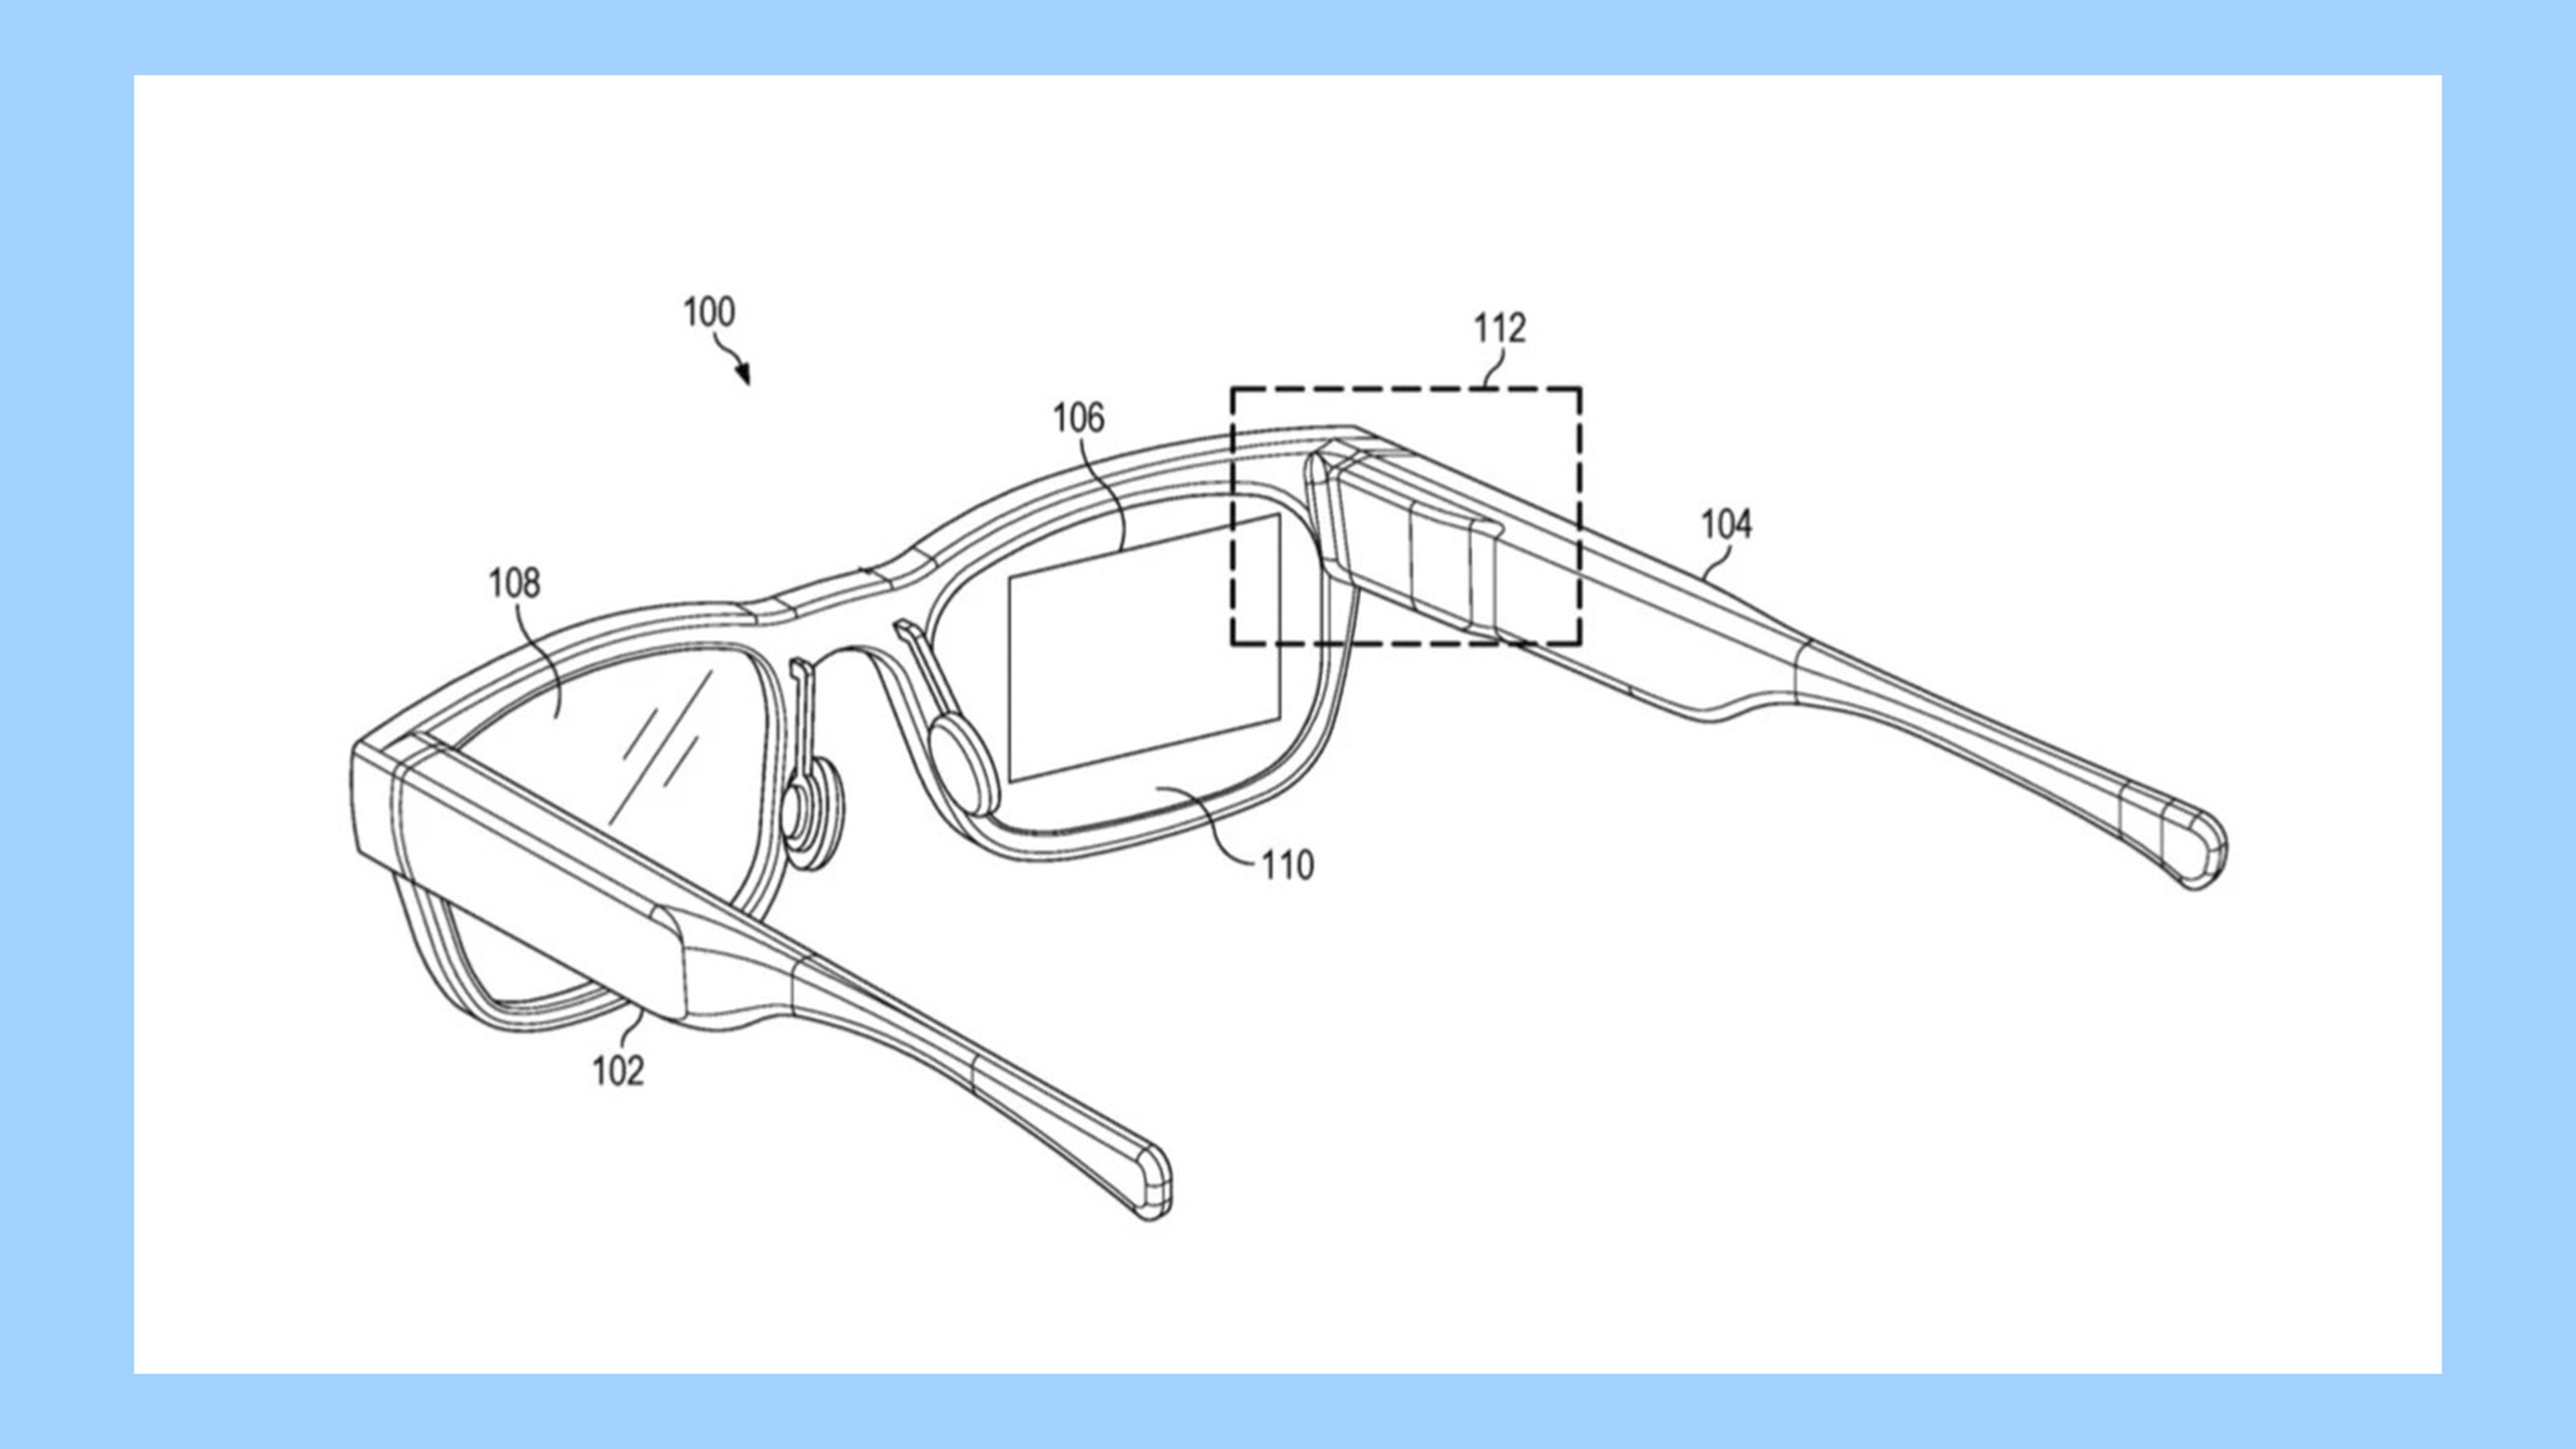 Todo lo que sabemos de las próximas gafas AR/VR de Google